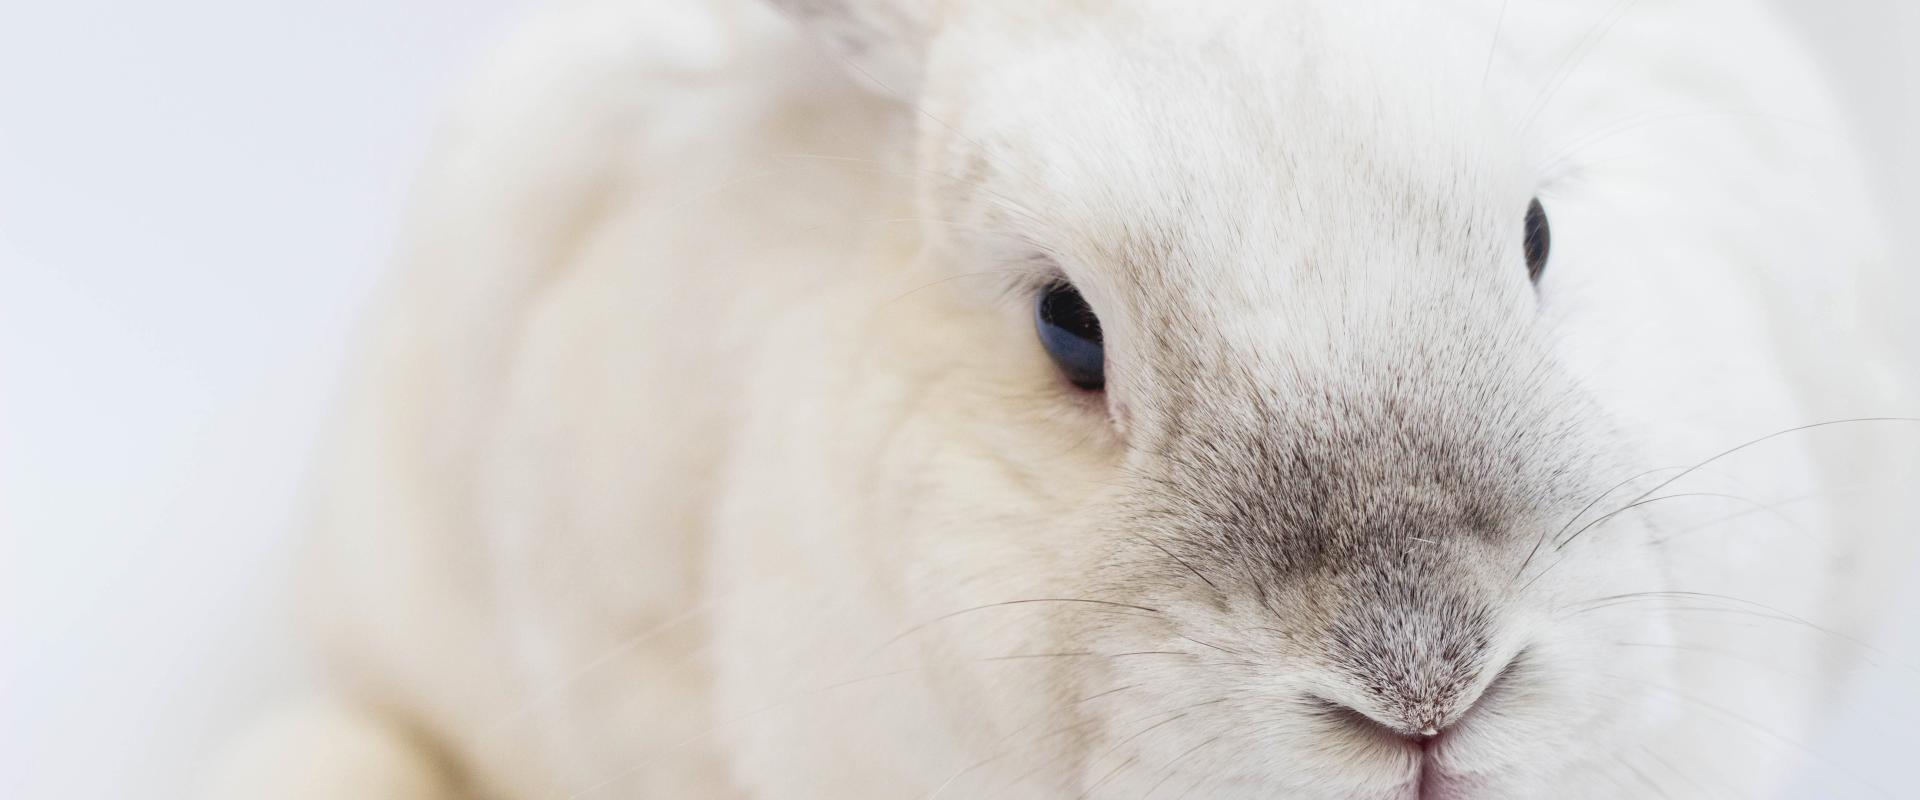 CosmetoSAFE: Dekada bez testów na zwierzętach w UE. Co się zmieniło w podejściu firm i regulatorów?